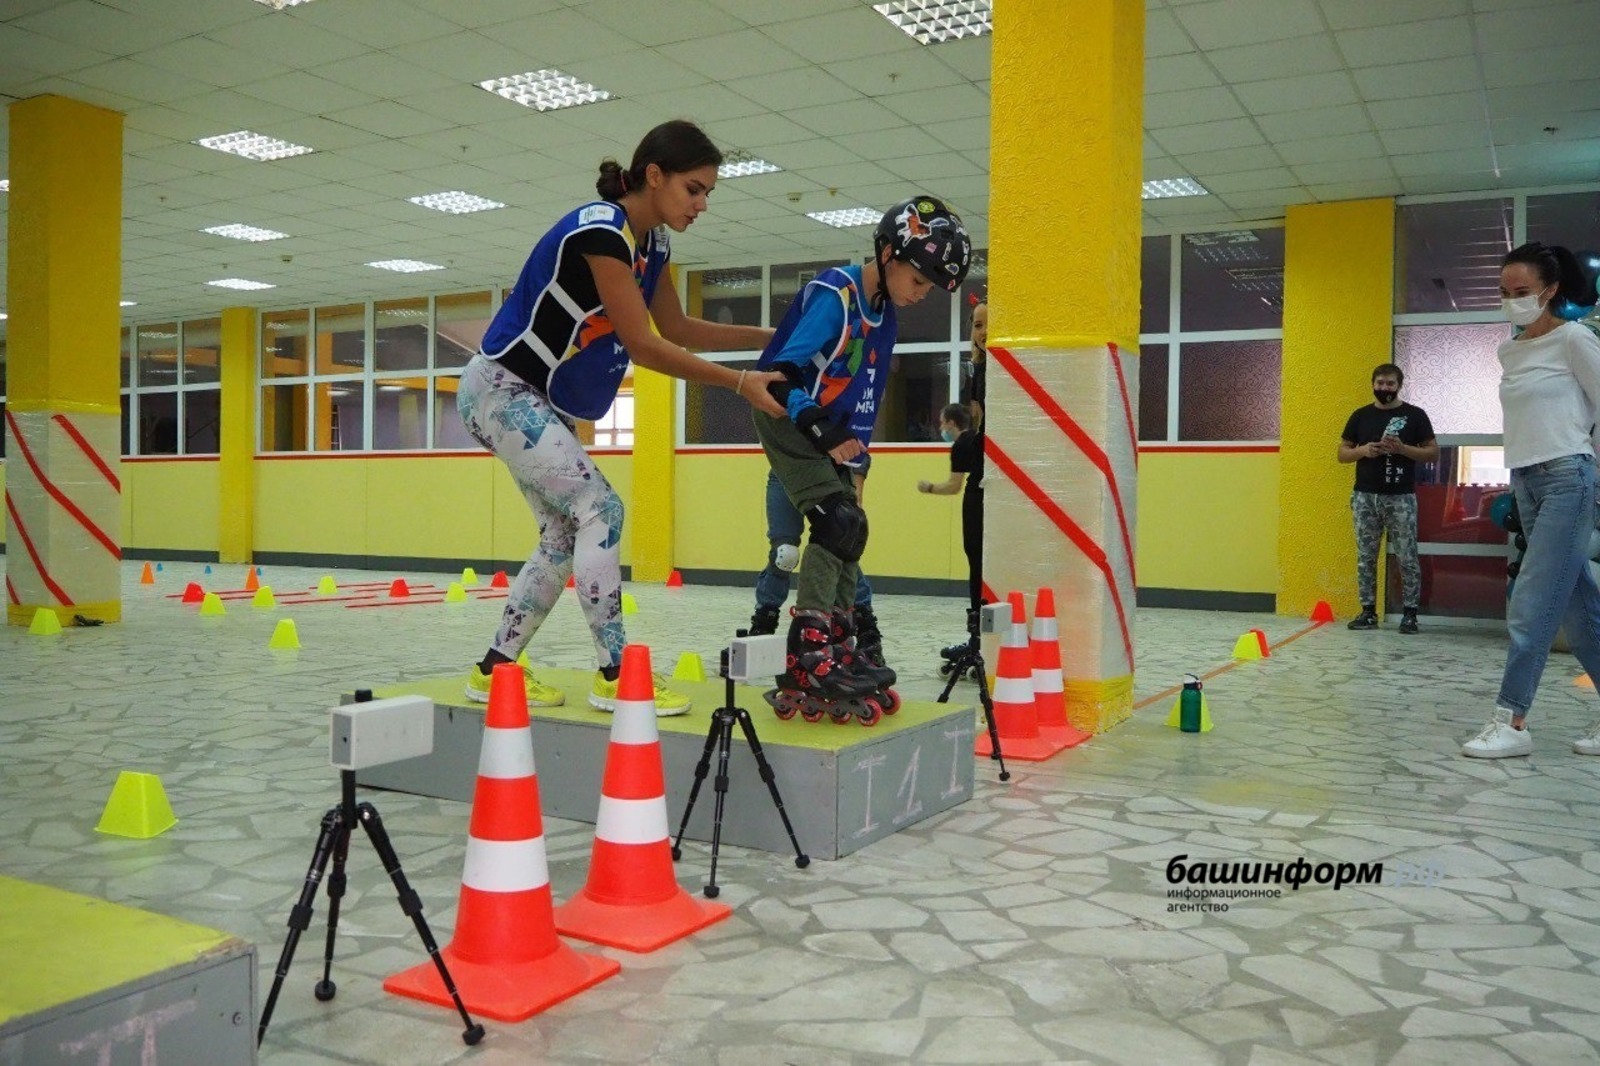 Диагноз спорту не помеха: в Уфе для детей-инвалидов организованы занятия по роликовым конькам